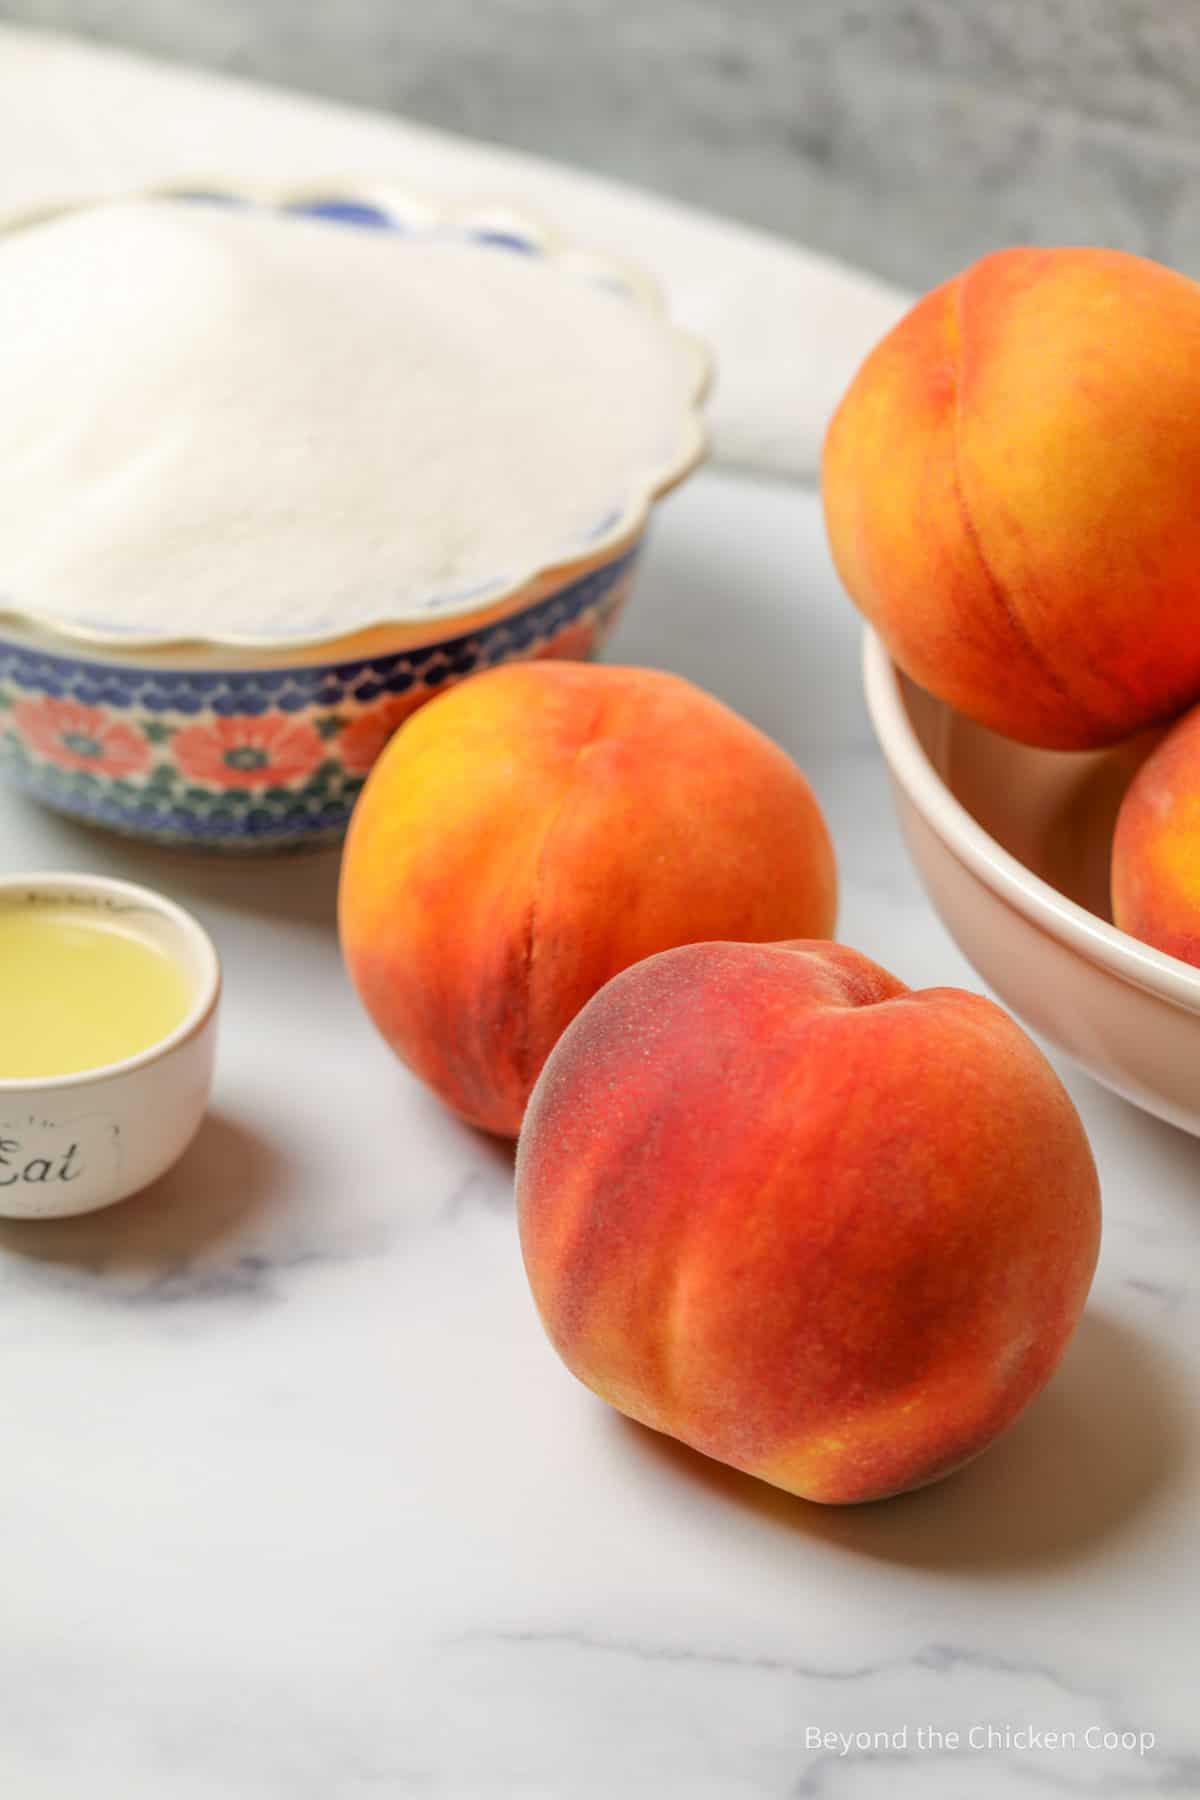 Fresh peaches and a bowl of sugar.